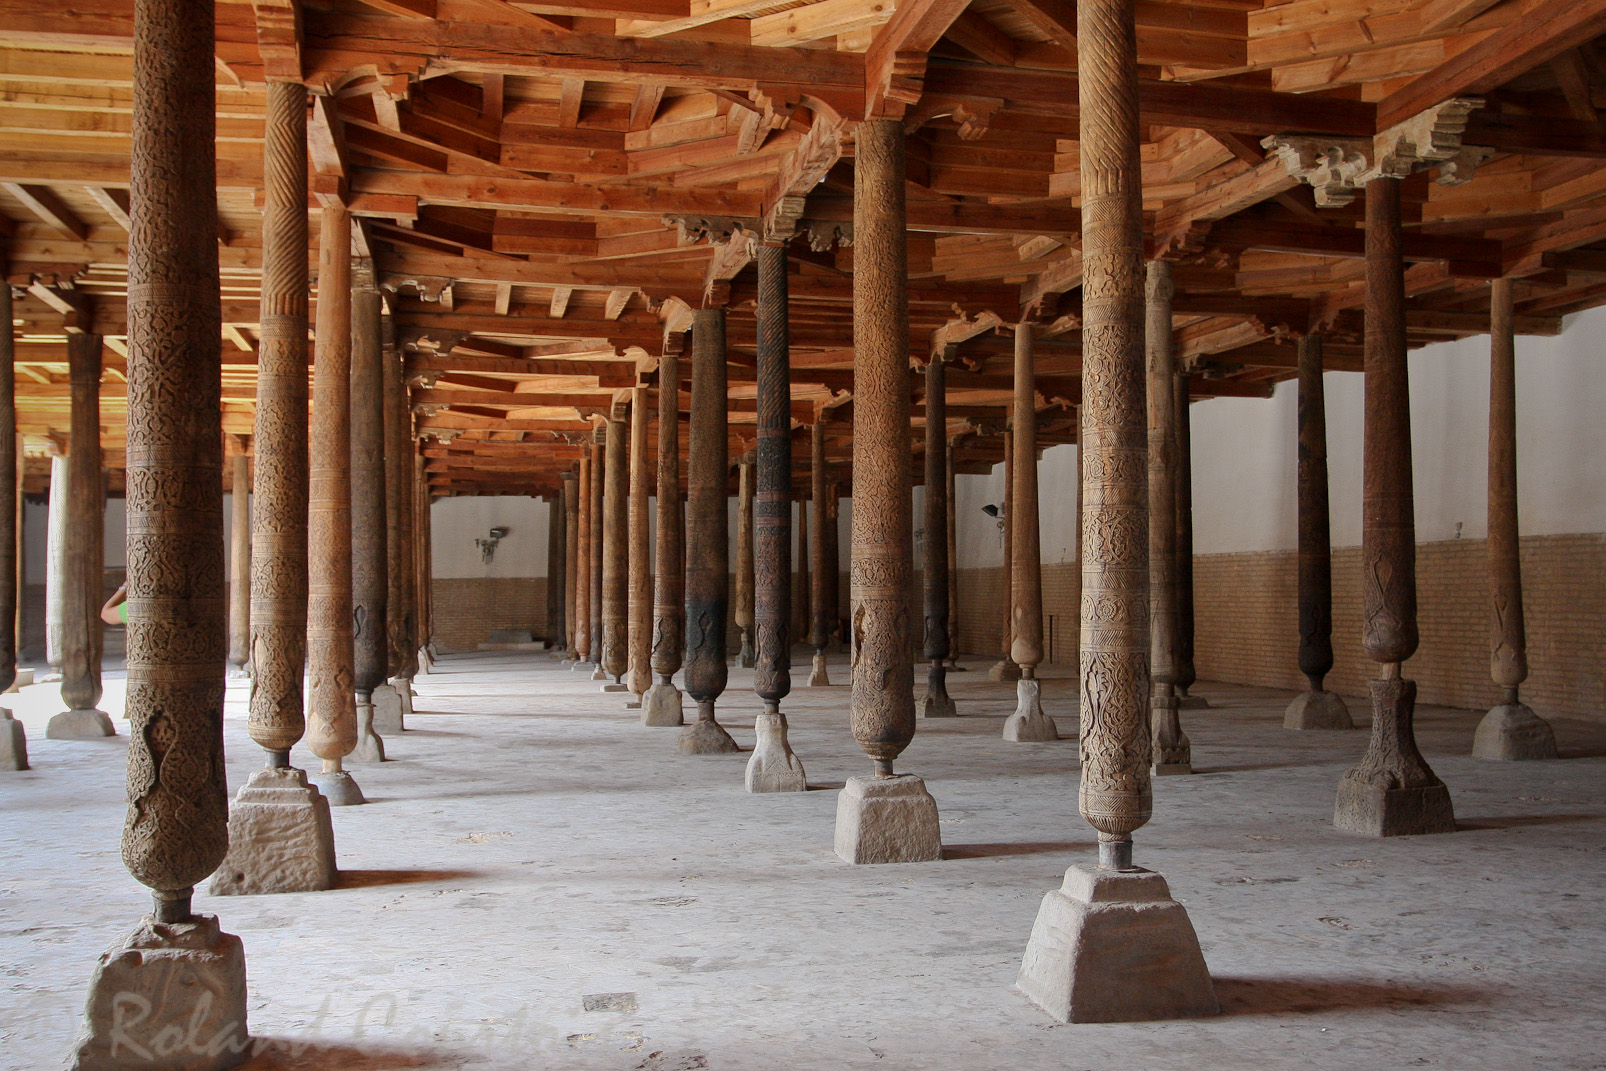 La mosquée Juma compte 213 piliers de bois sculptés.